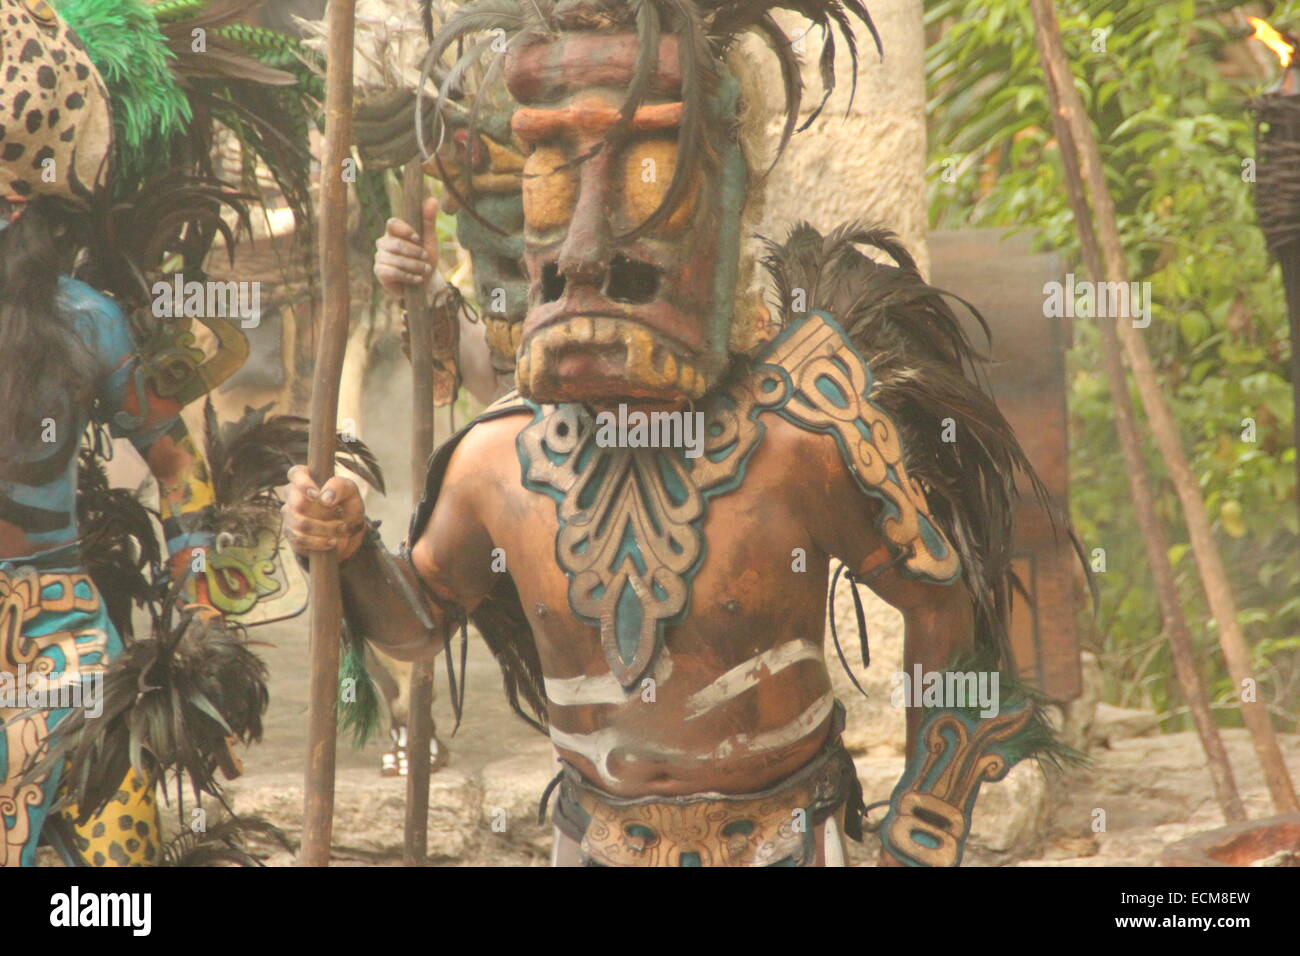 Mayan Indians dancing Stock Photo